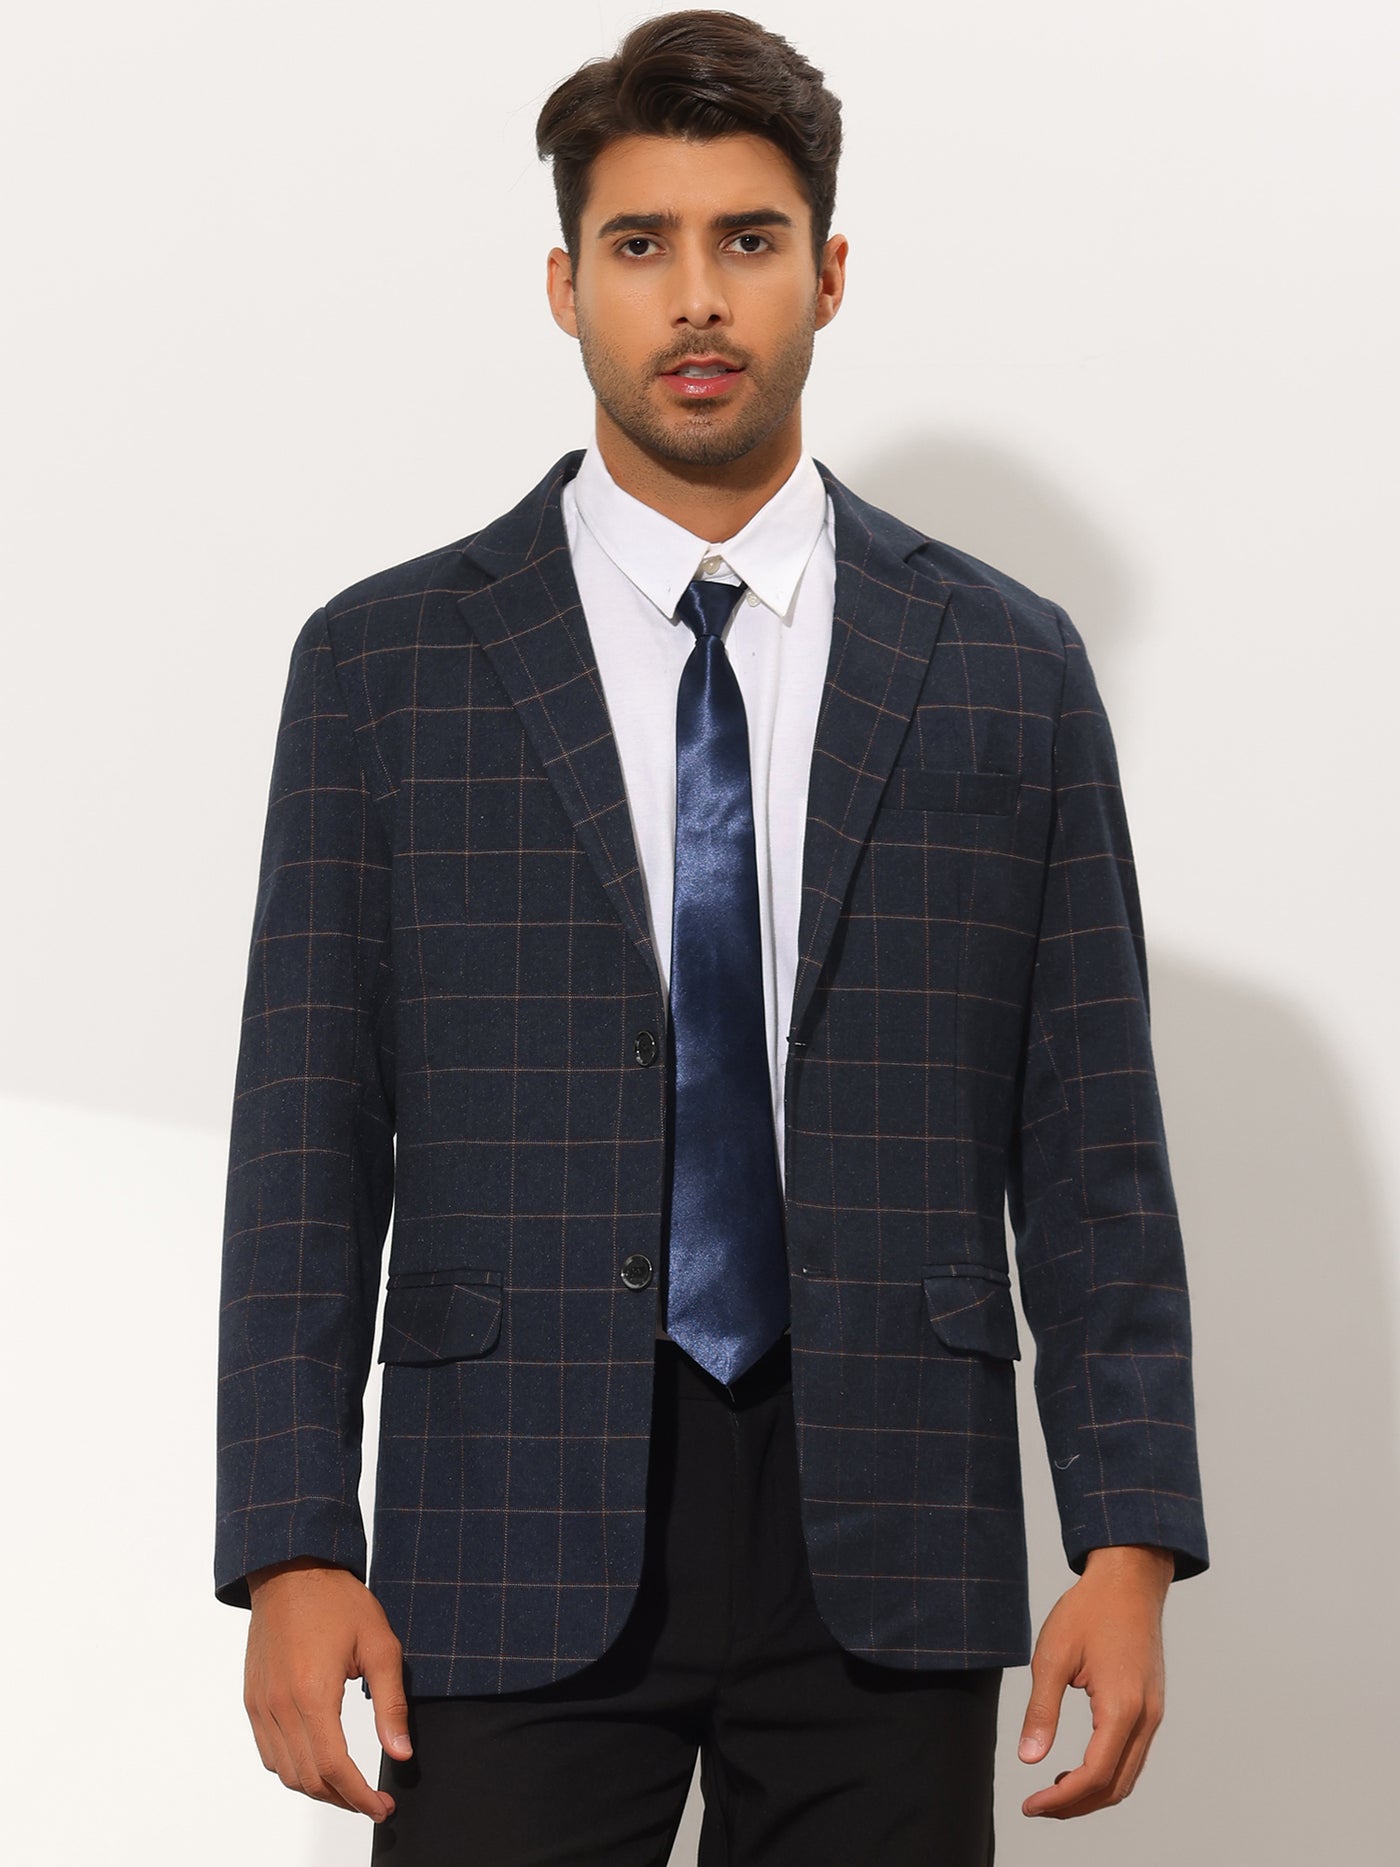 Bublédon Men's Plaid Casual Slim Fit Two Button Checked Suit Blazer Jackets